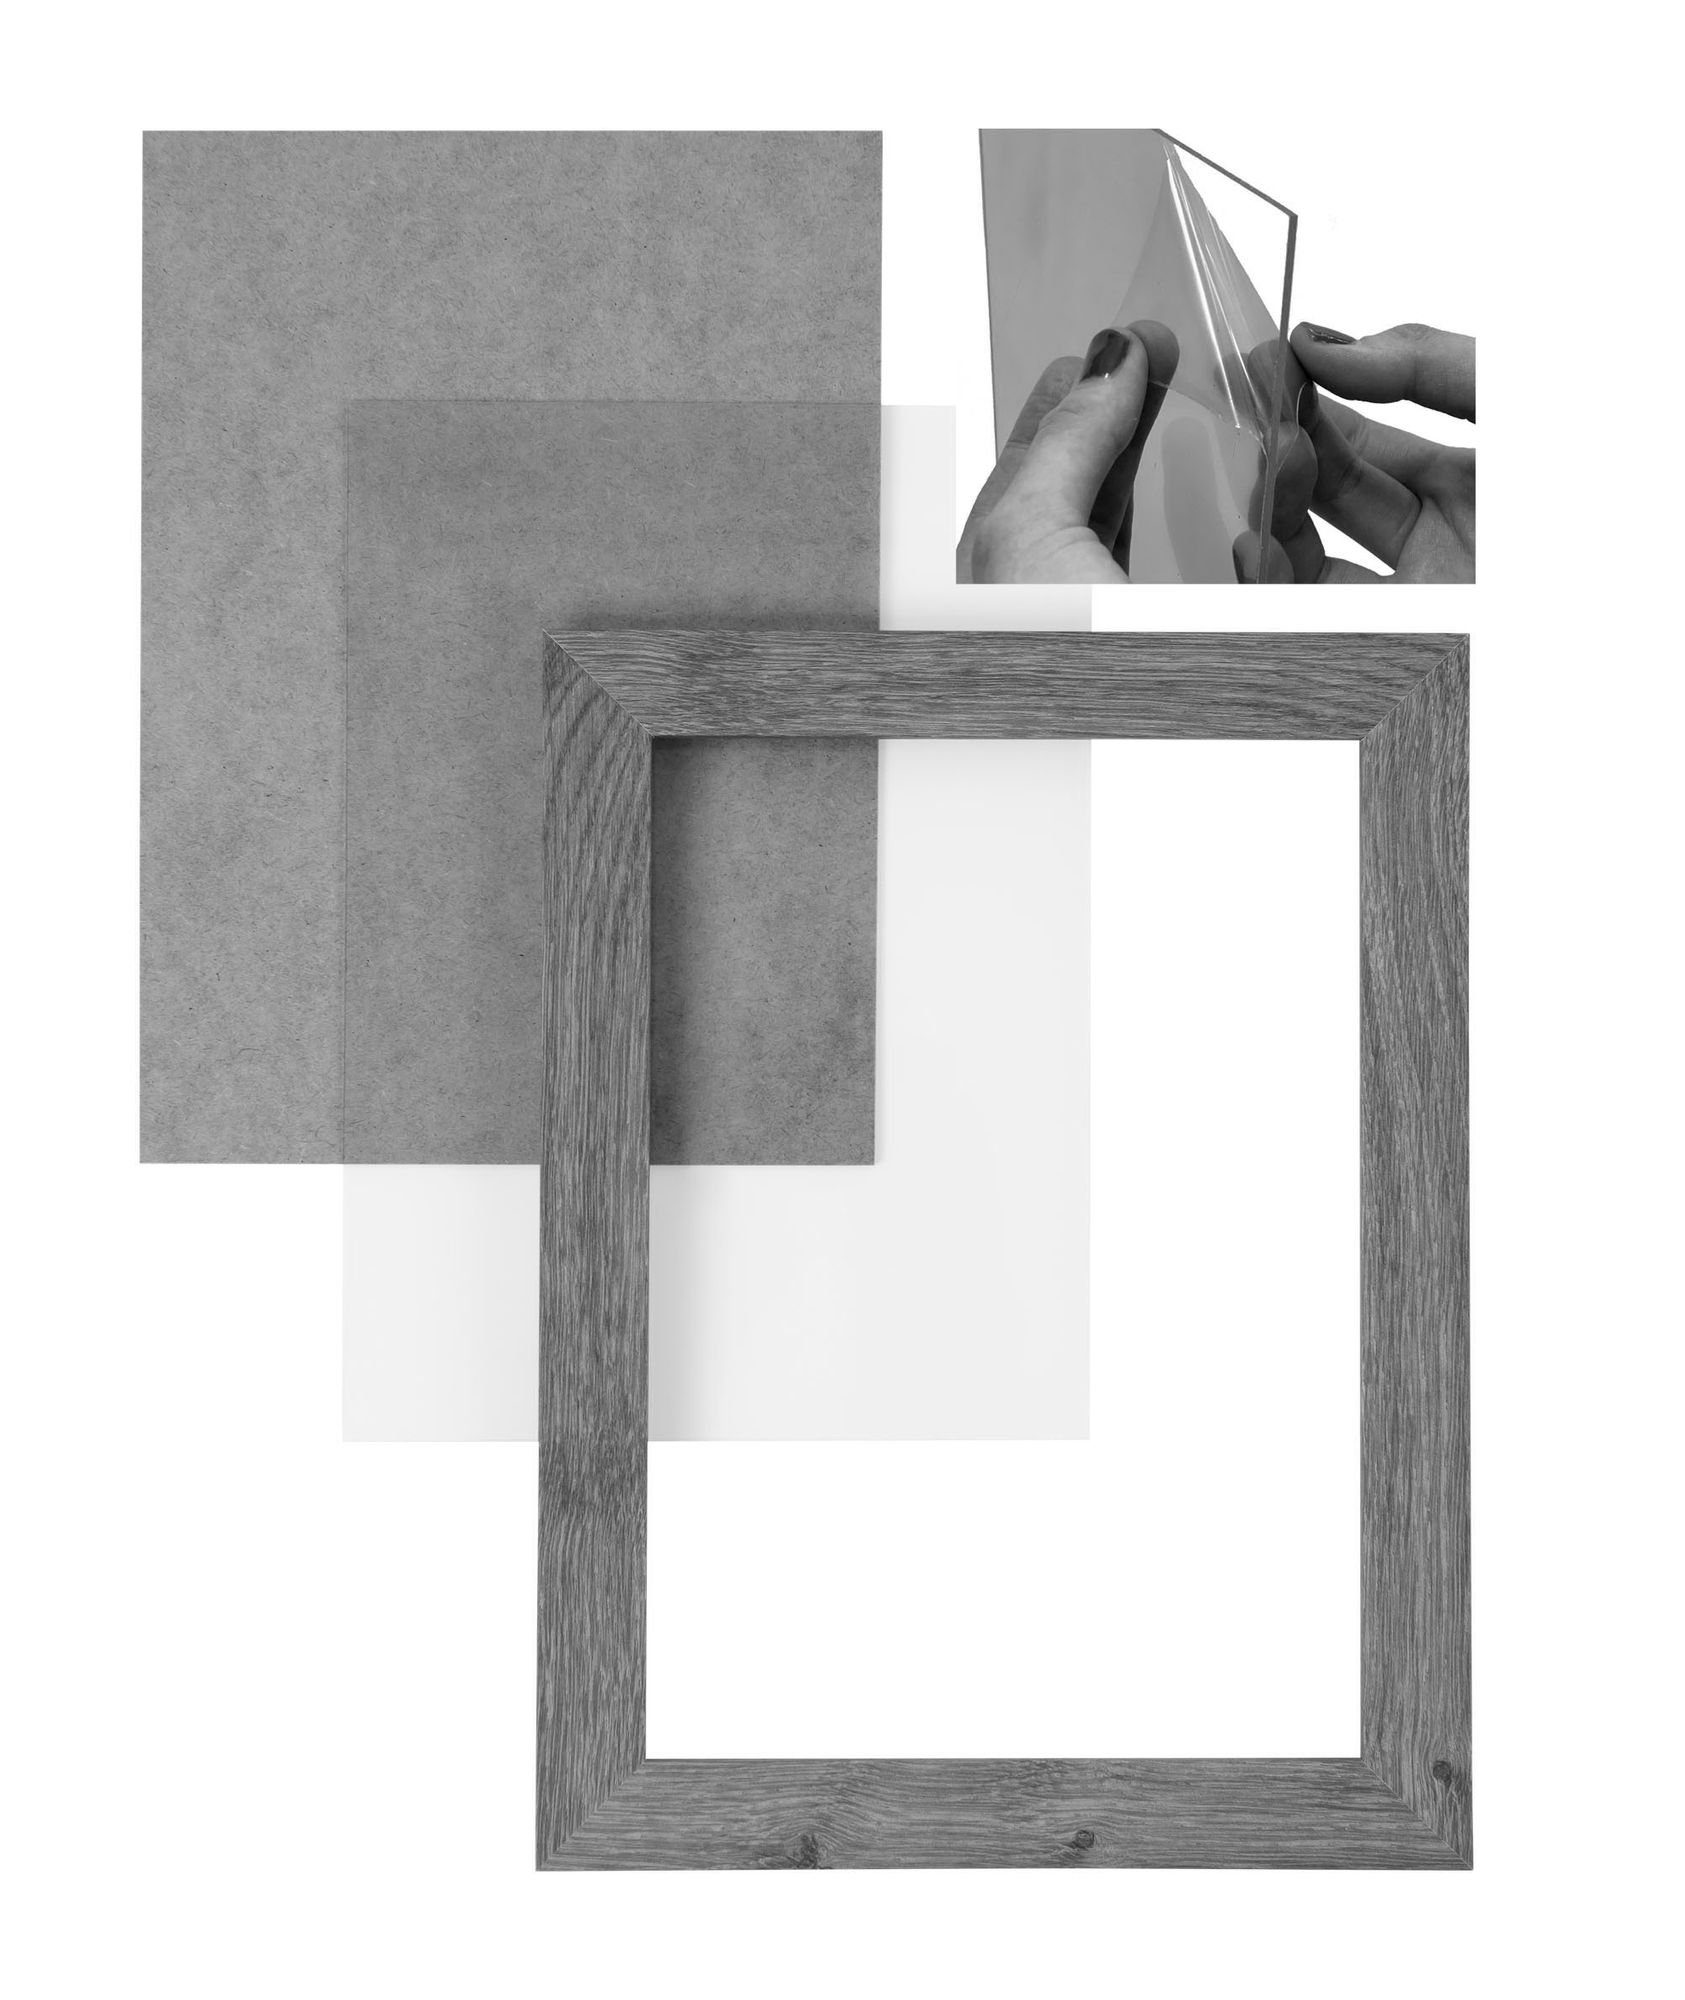 CLAMARO Maß weiss Holz Bilderrahmen Rahmen 'Collage' inkl. Rückwand Aufhänger Acrylglas, MDF nach handgefertigt matt 23x32 Bilderrahmen und FSC® in Moderner Clamaro eckiger